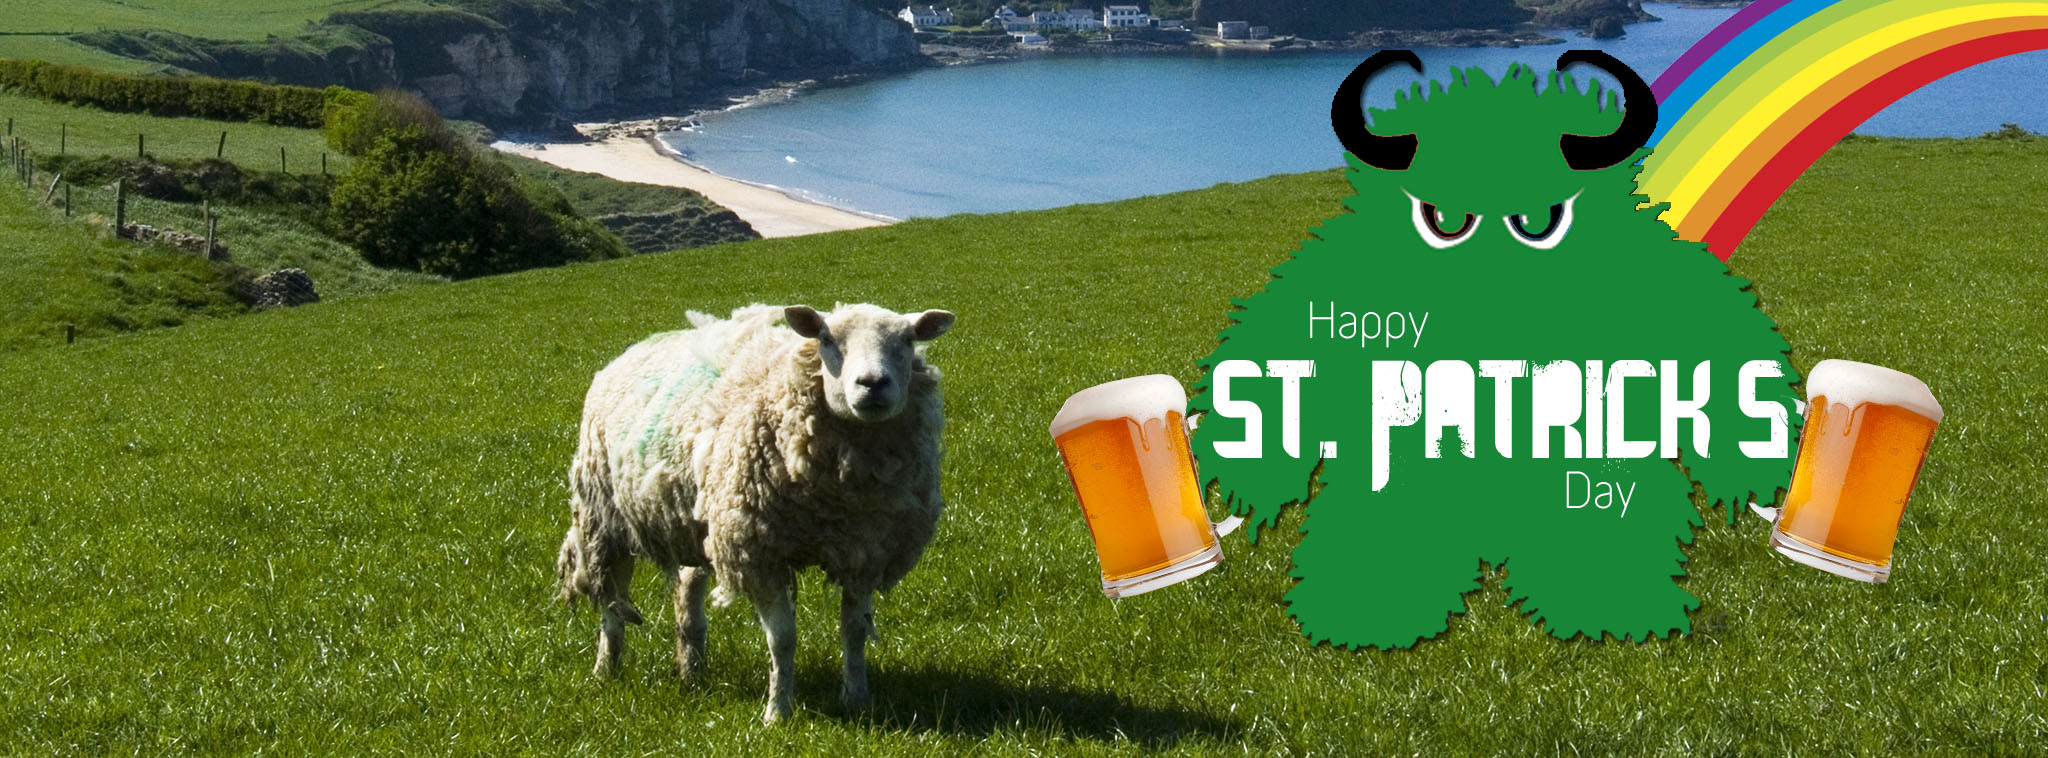 Happy St. Patrick’s Day 2015